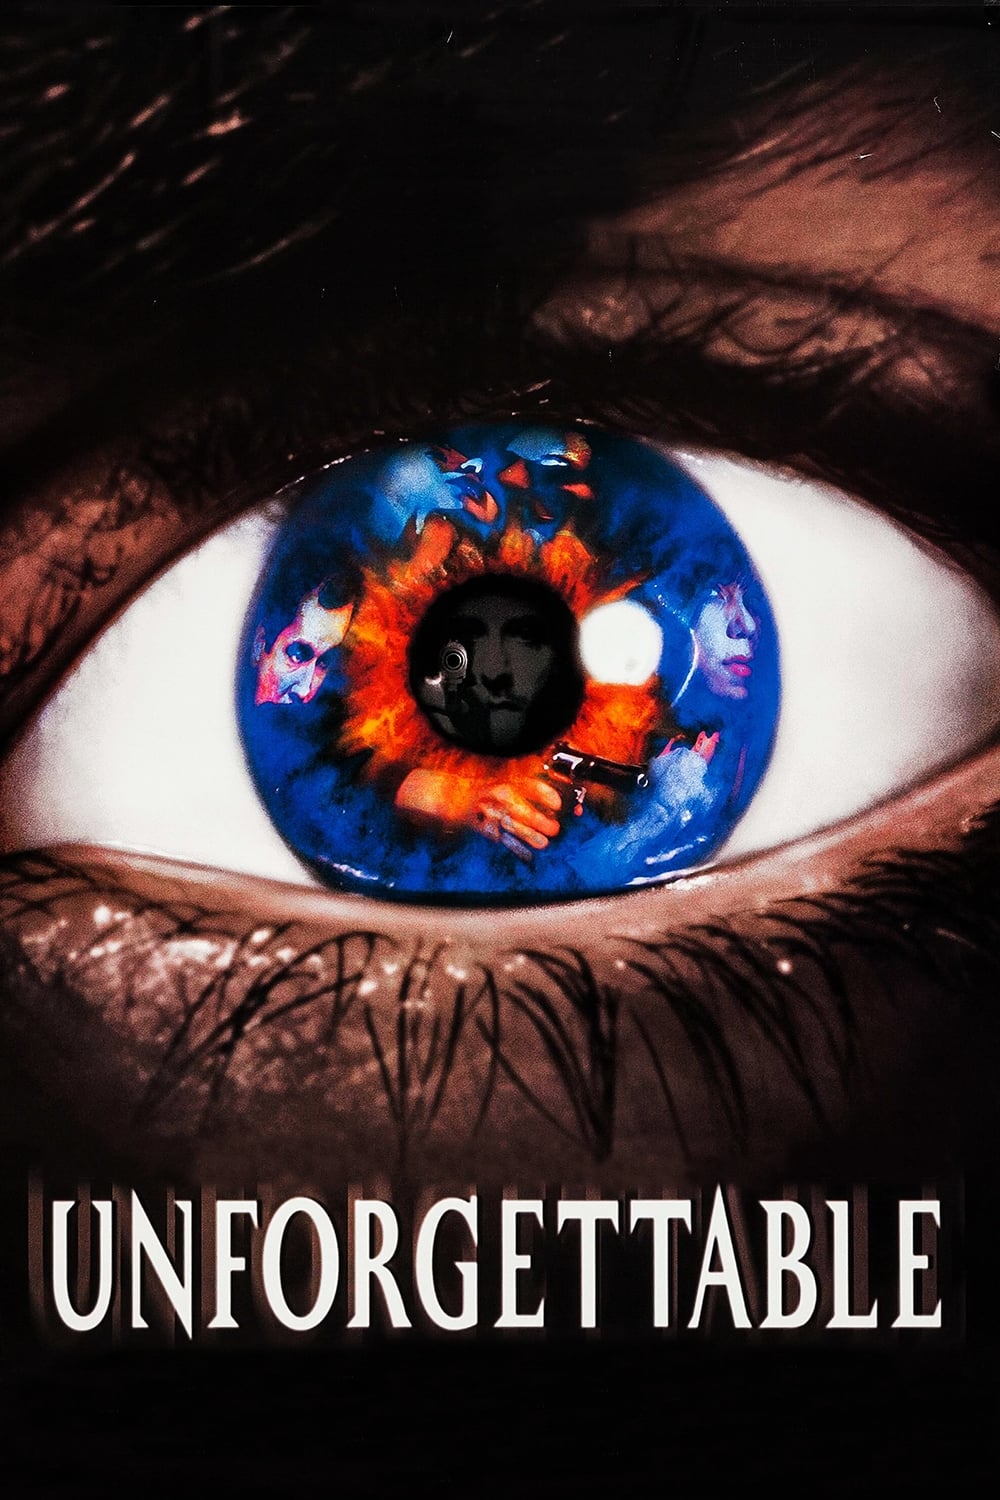 Unforgettable - Im Augenblick des Todes (1996)